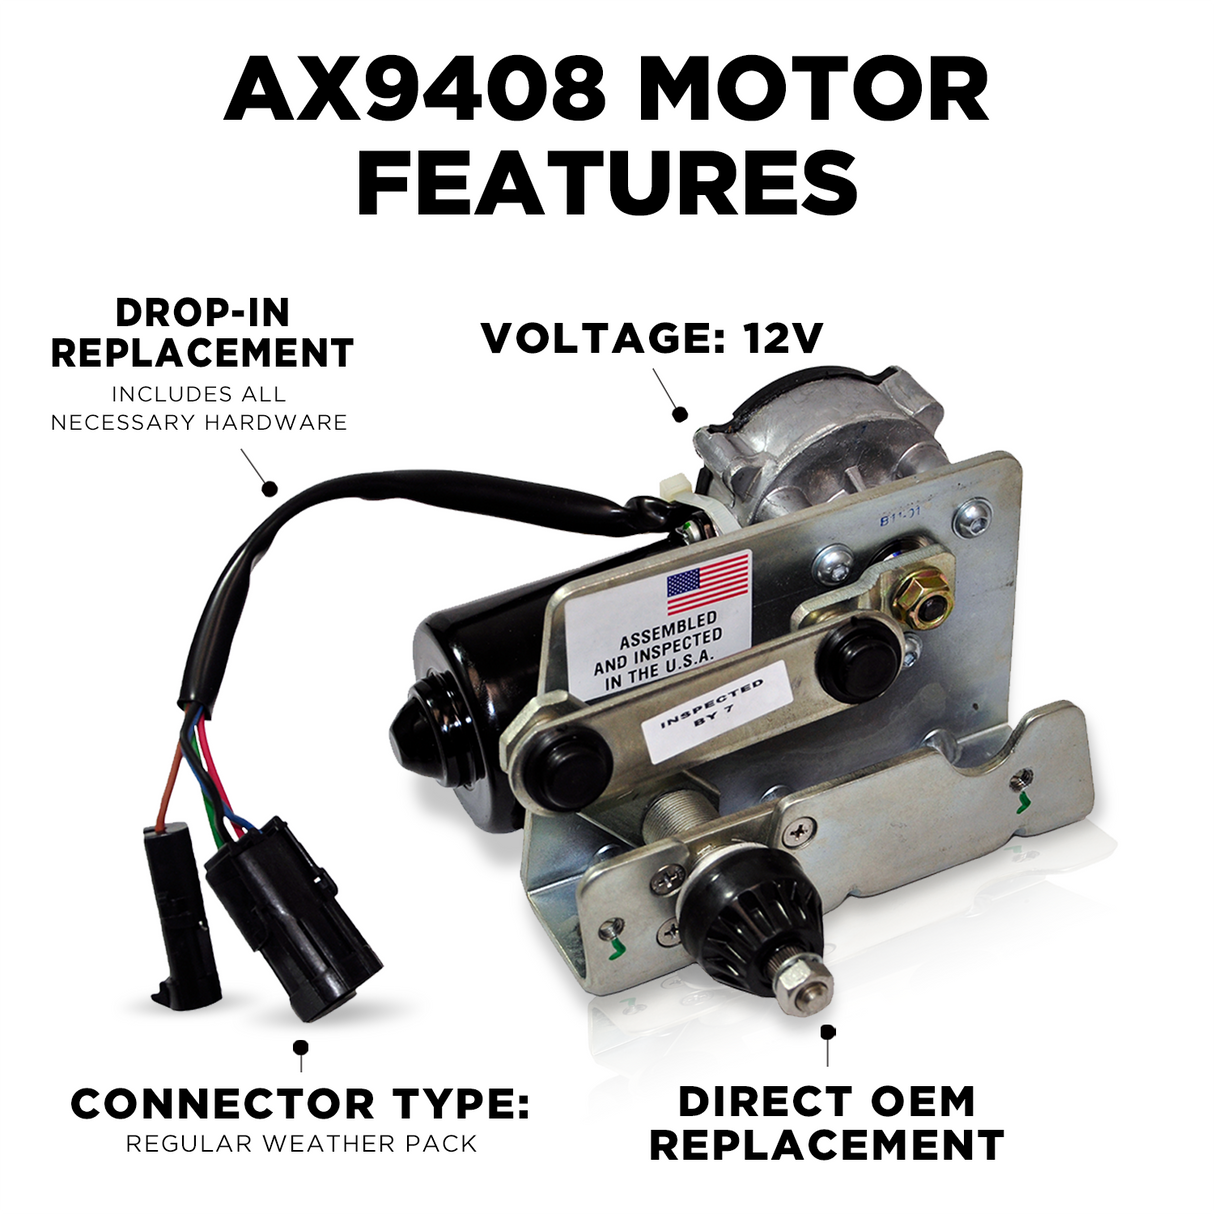 AX9408 Mack MR - LE - Refuse Commercial Wiper Motors